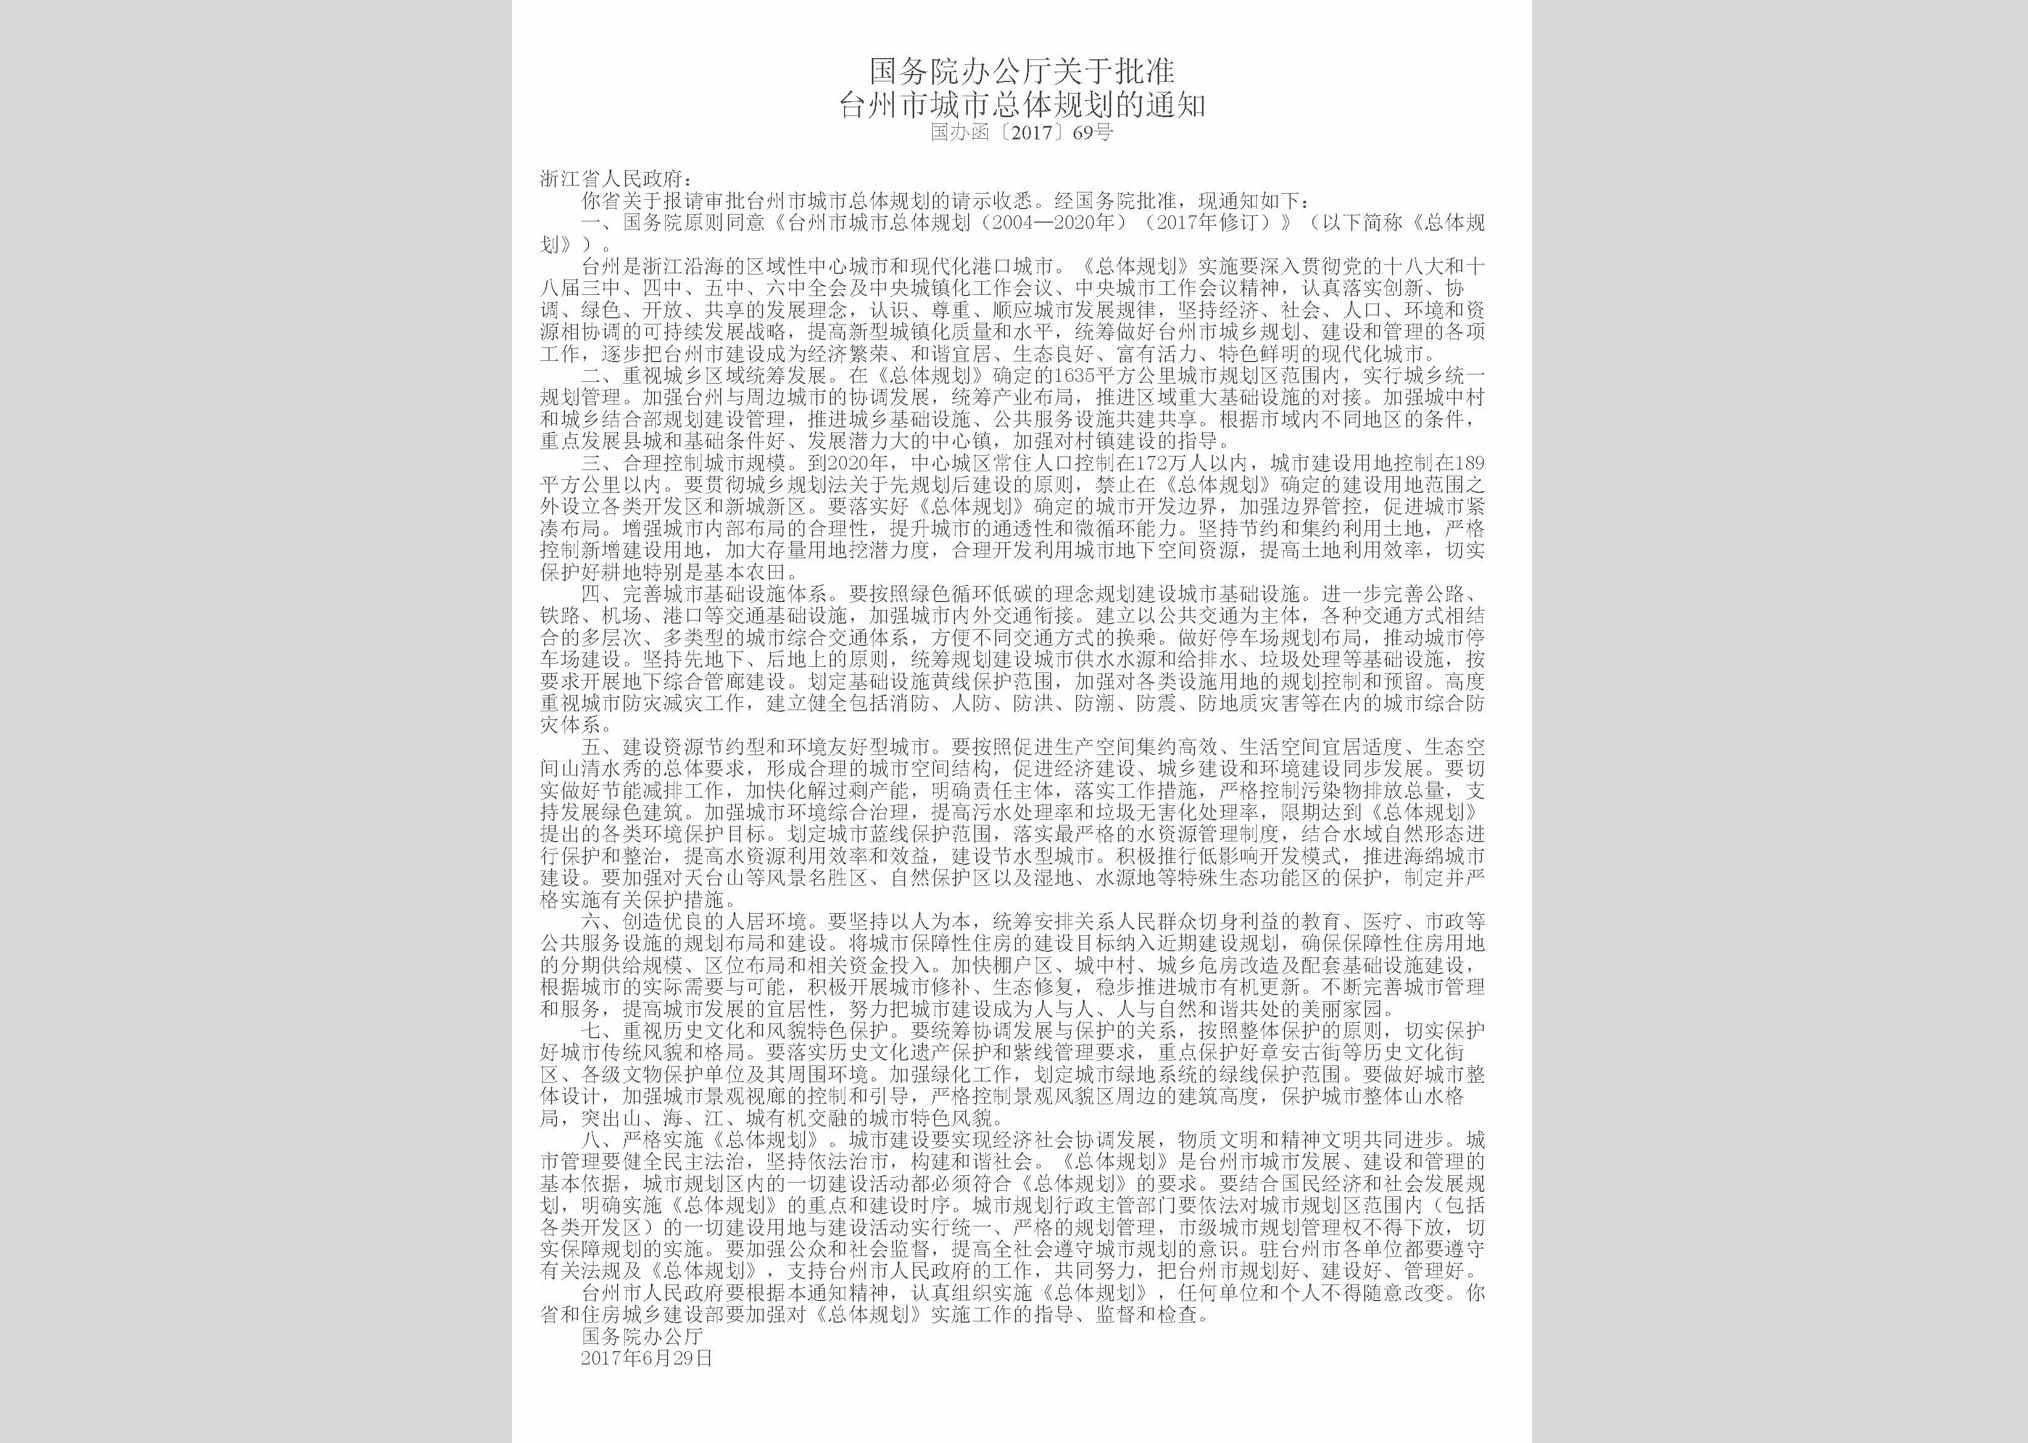 国办函[2017]69号：国务院办公厅关于批准台州市城市总体规划的通知